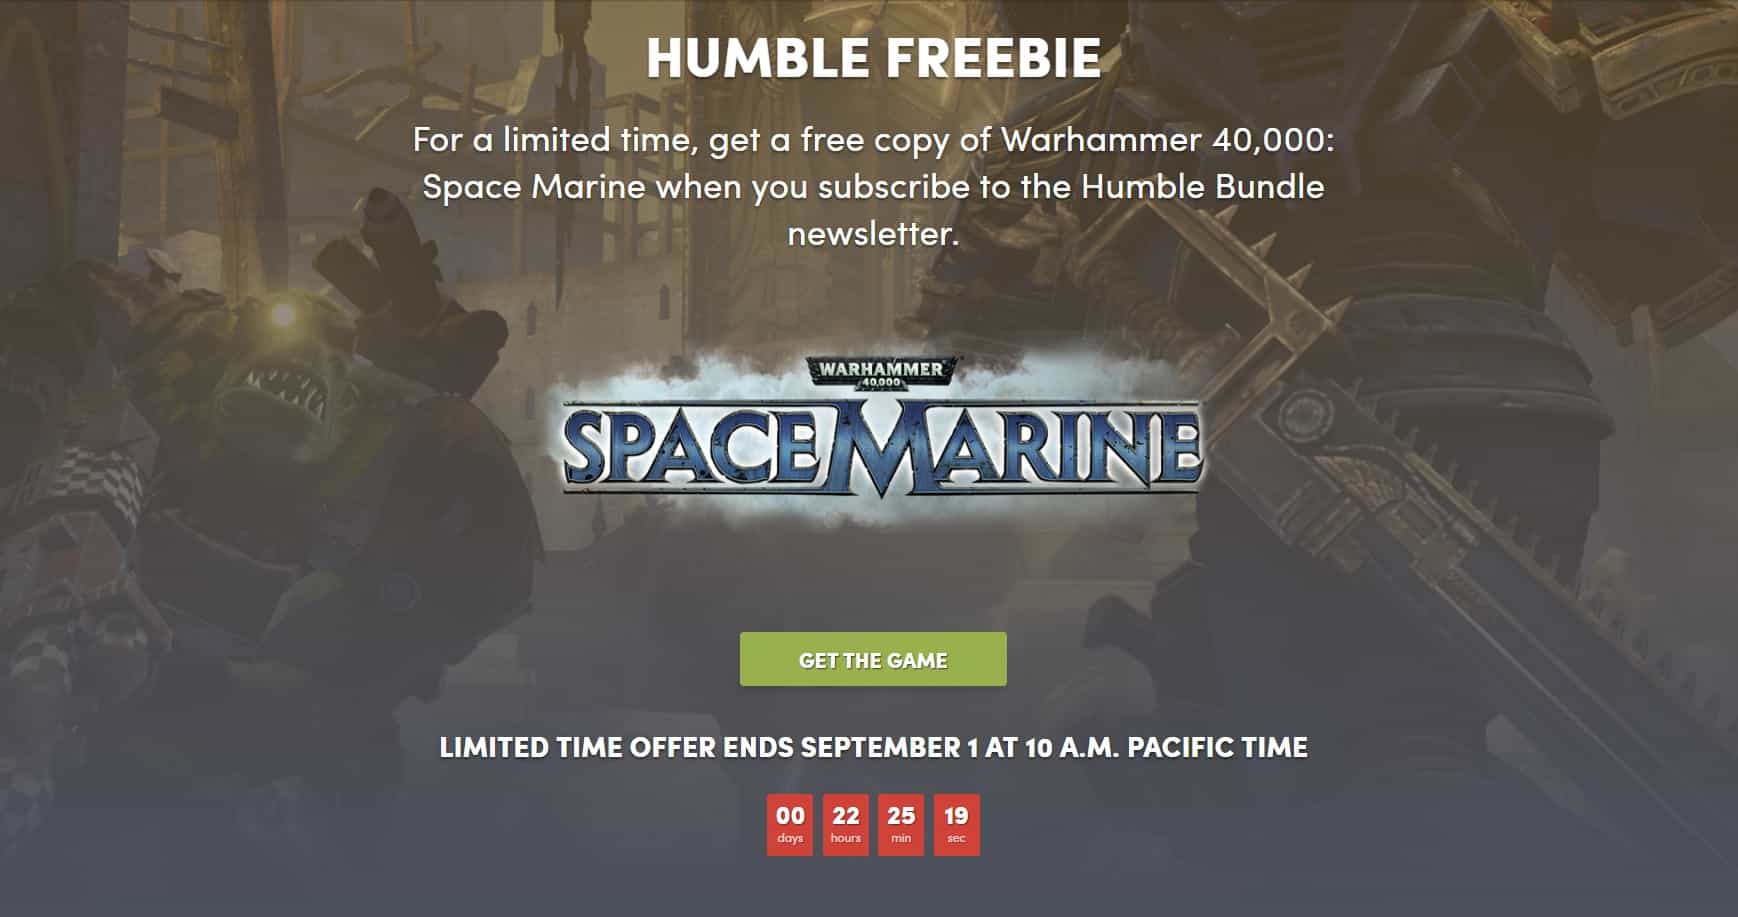 Warhammer 40k space marine gratis humblebundle